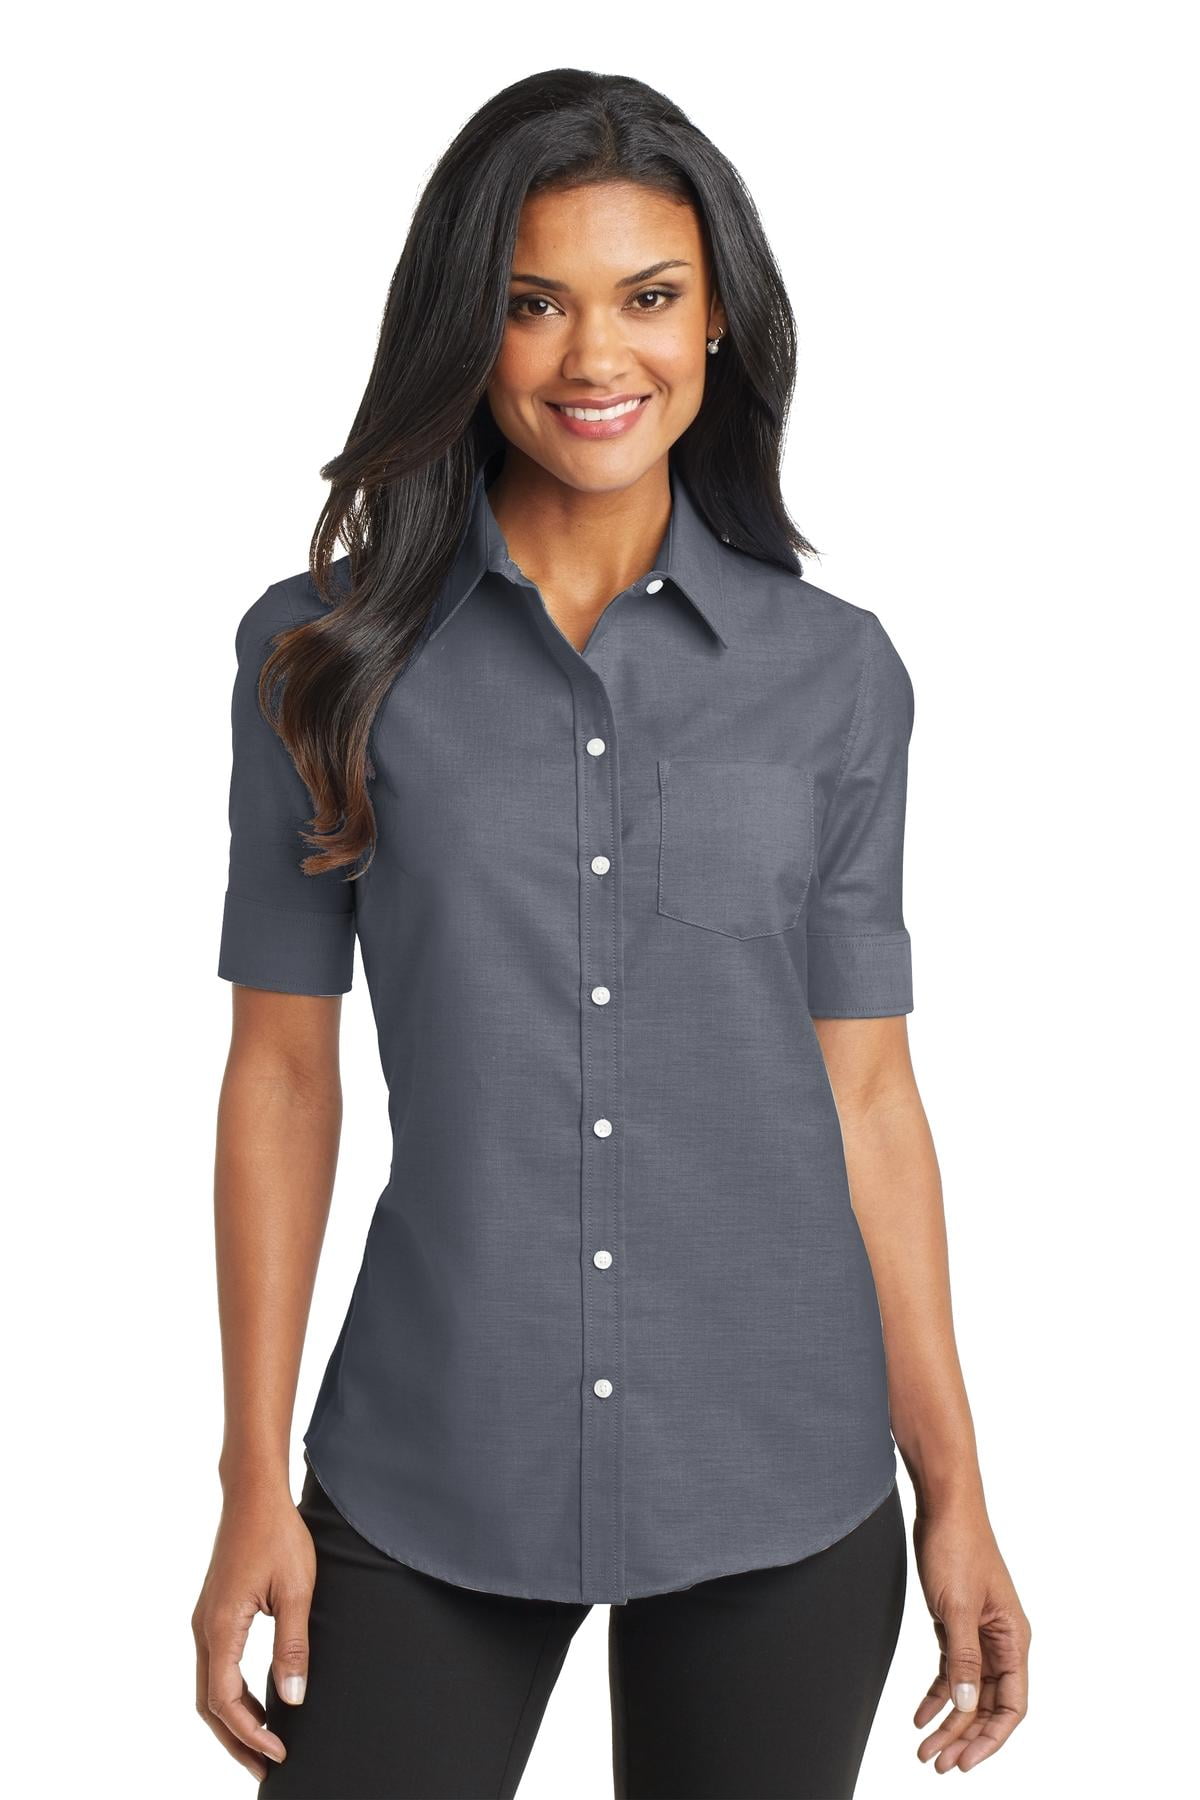 Port Authority Adult Female Women Plain Short Sleeves Shirt White 4X-Large